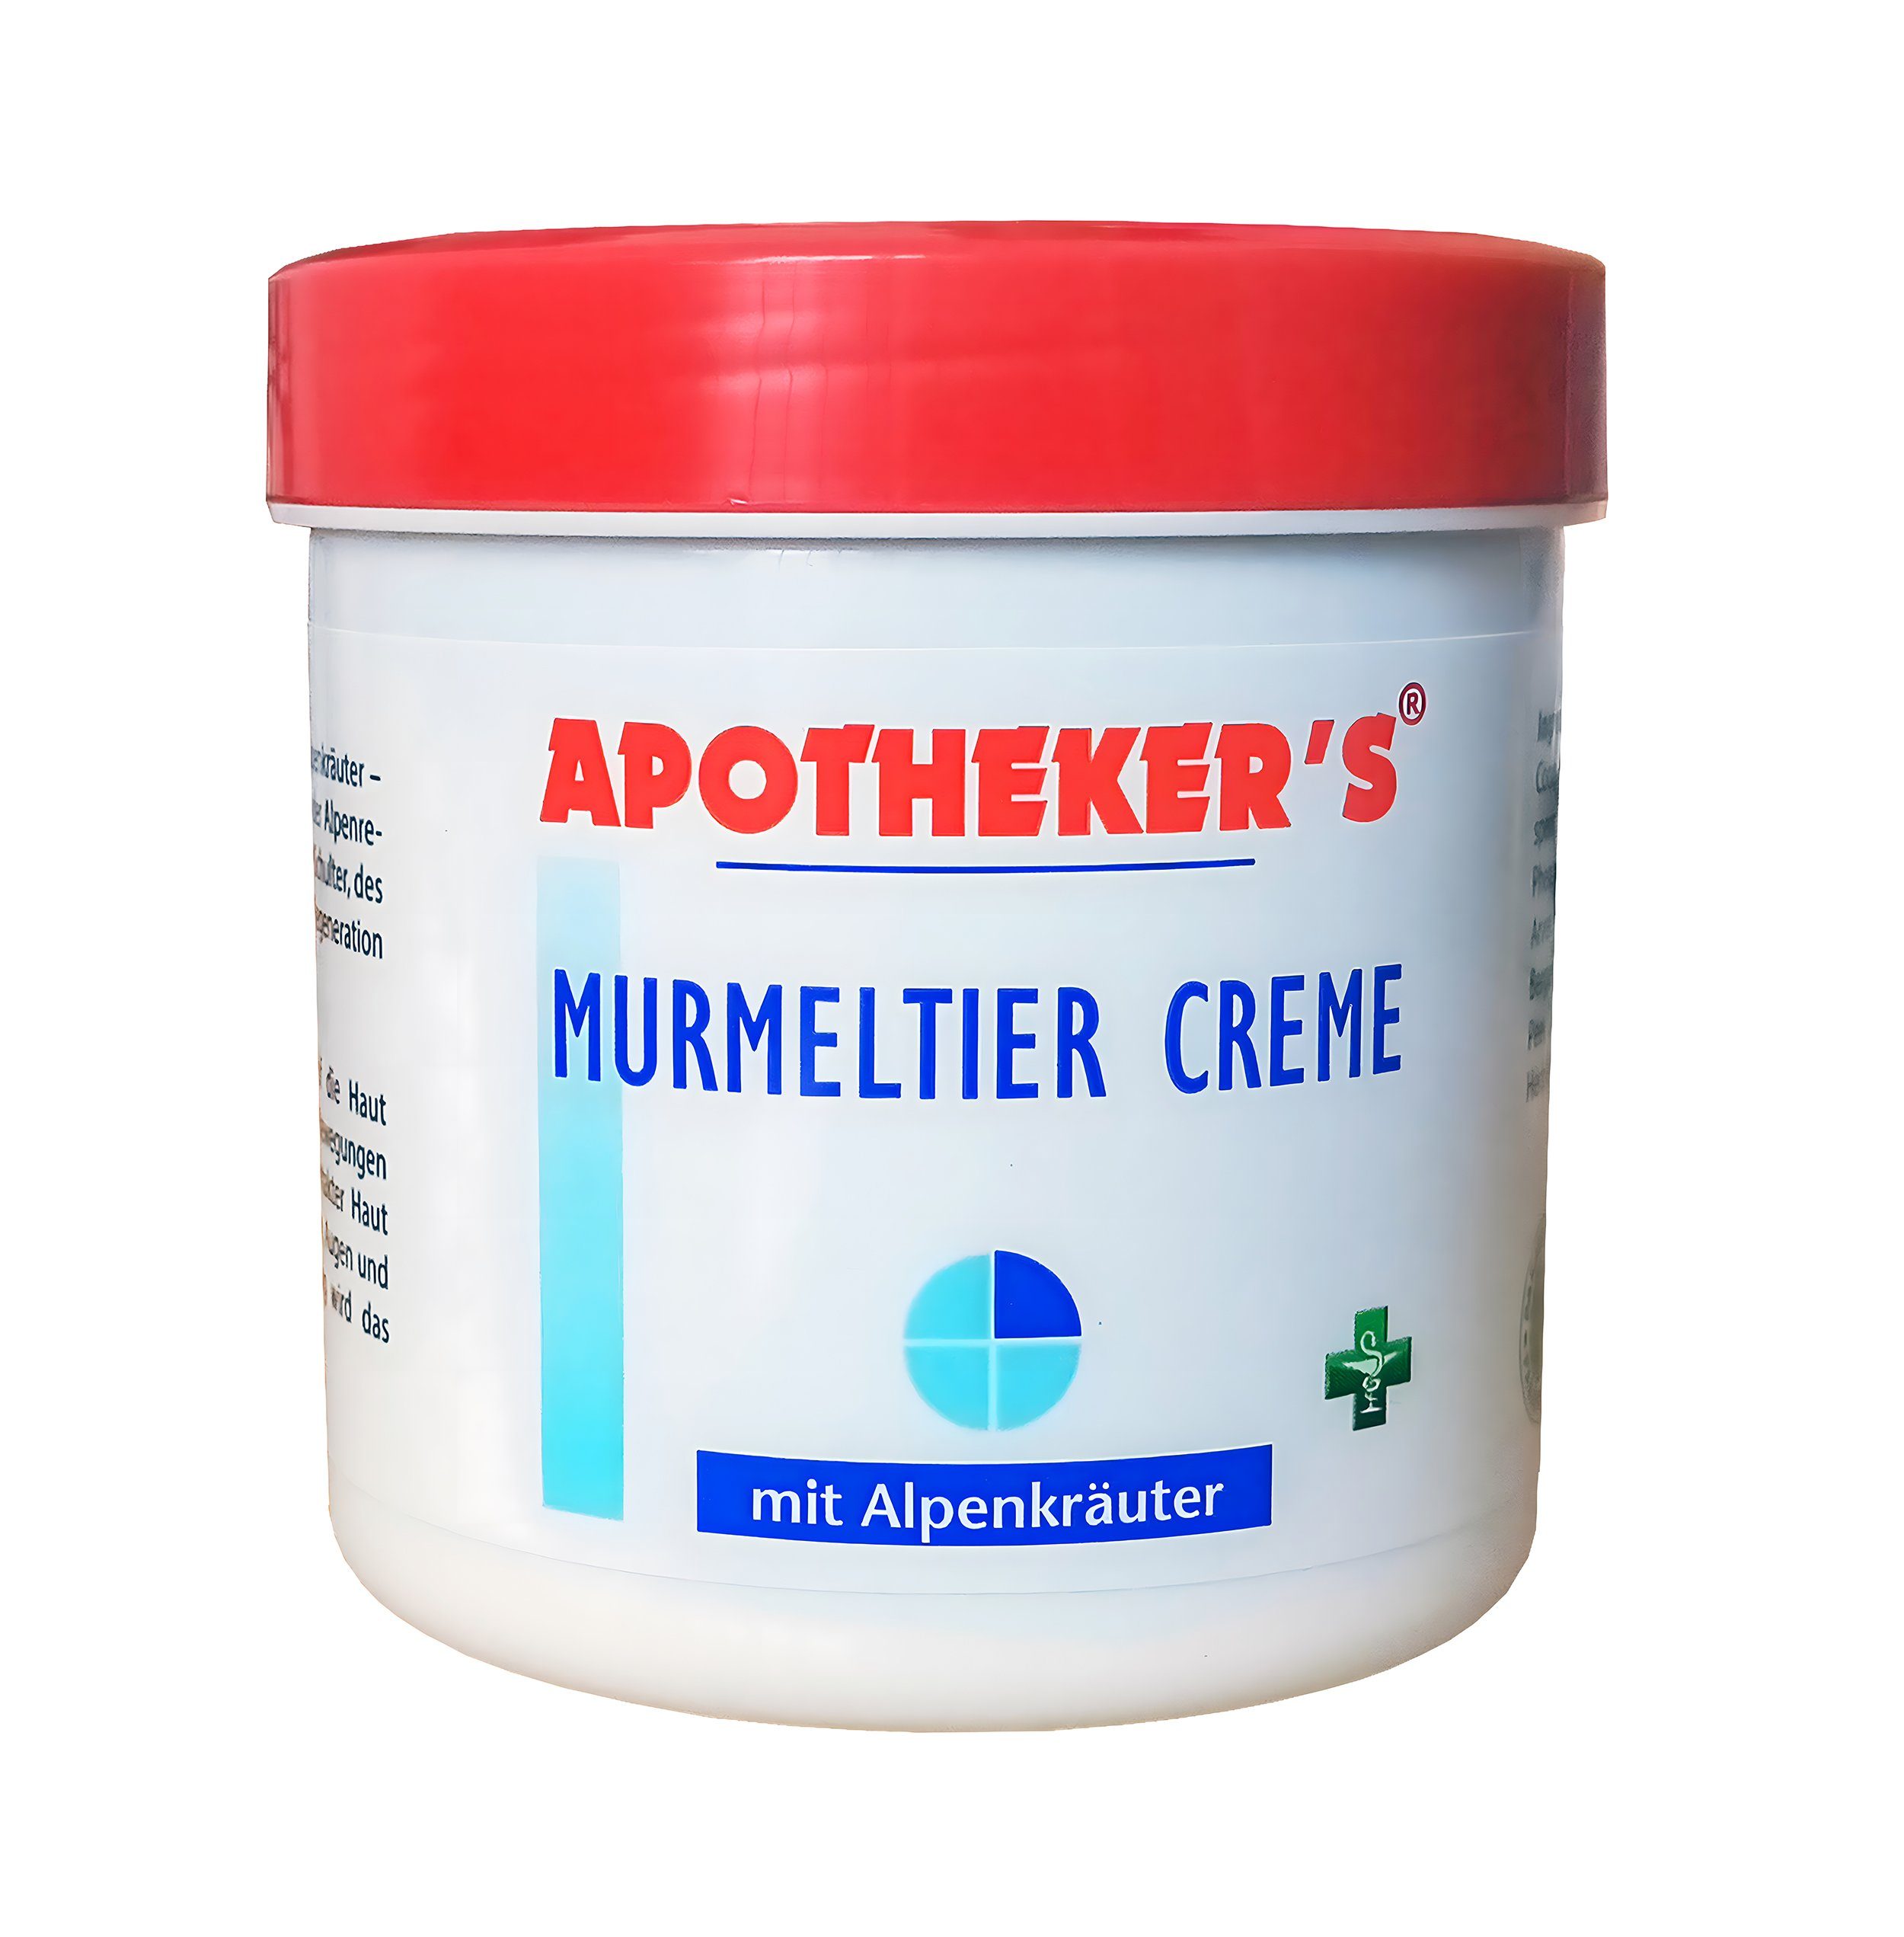 APOTHEKER'S Körpercreme MURMELTIER CREME 250ml mit Alpenkräuter Murmeltiercreme 67, für Muskeln und Gelenken Lotion Balsam